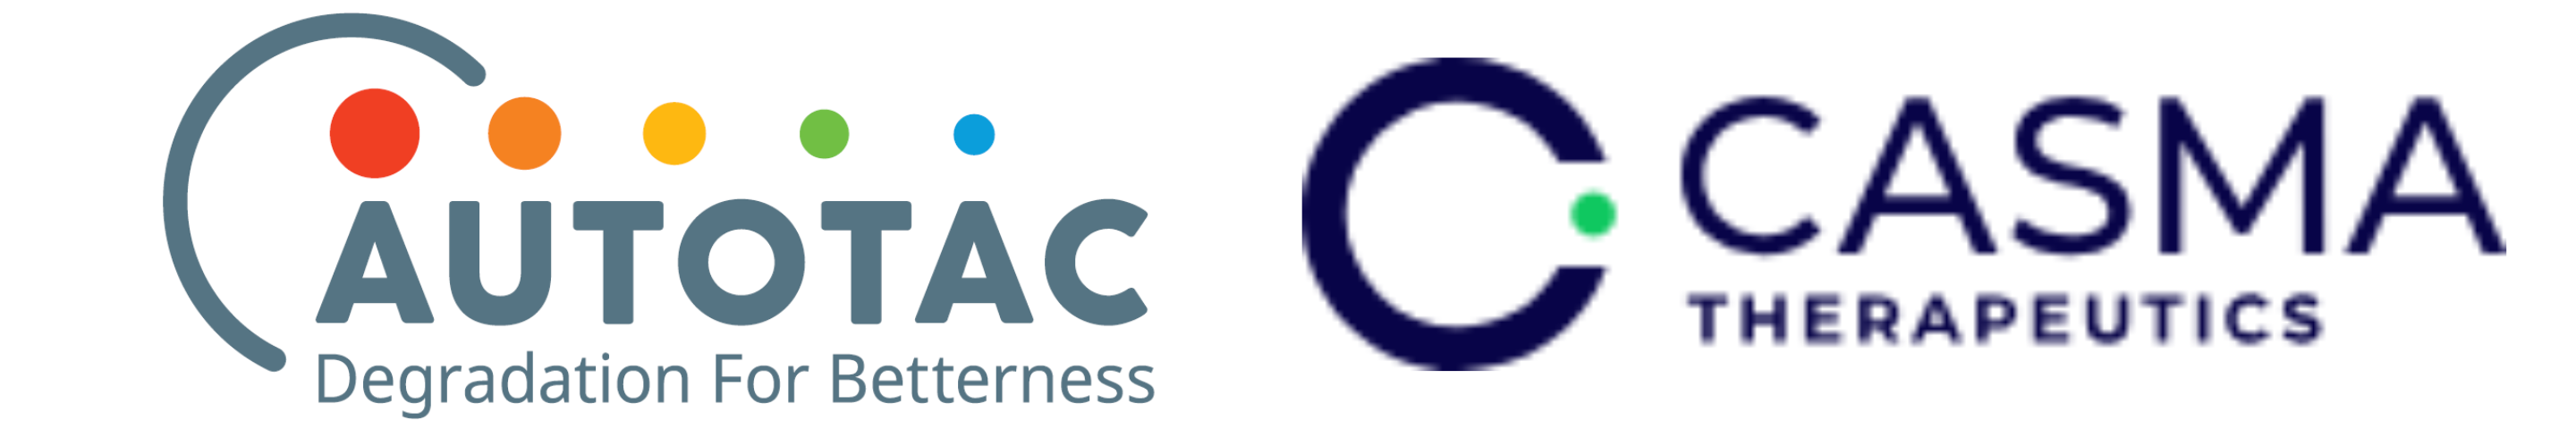 AUTOTAC BIO & Casma Therapeutics logos